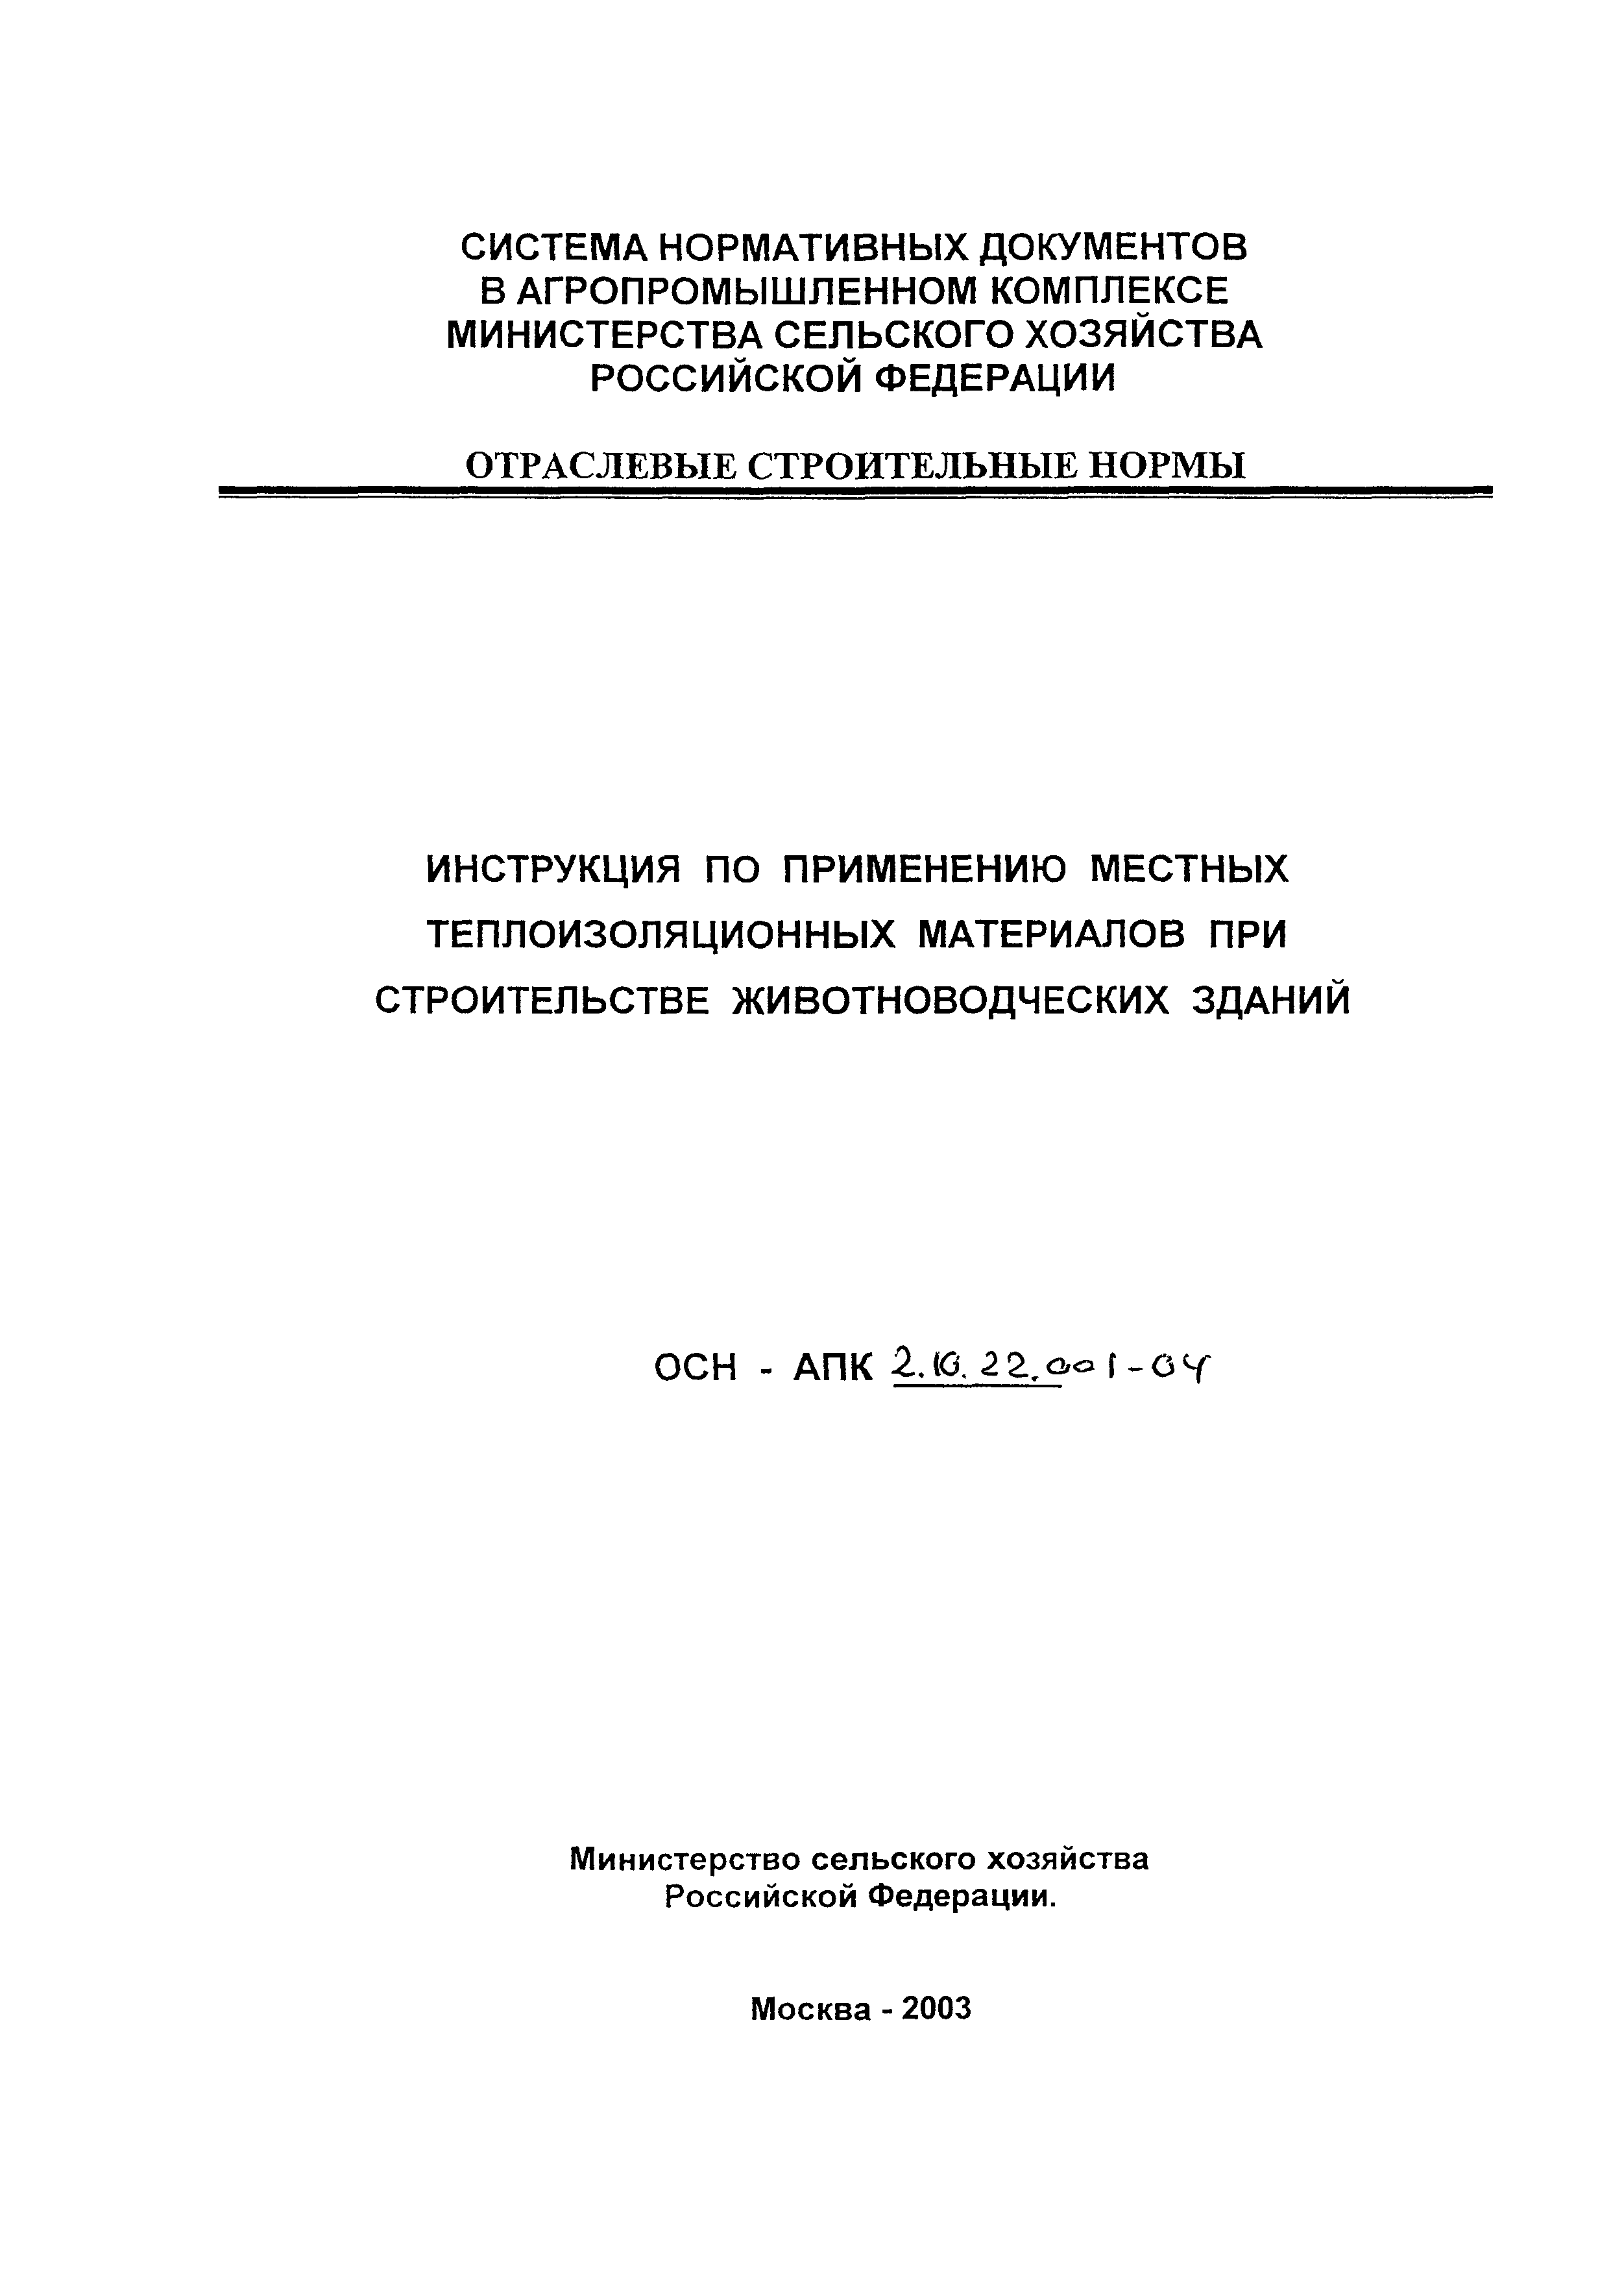 ОСН-АПК 2.10.22.001-04